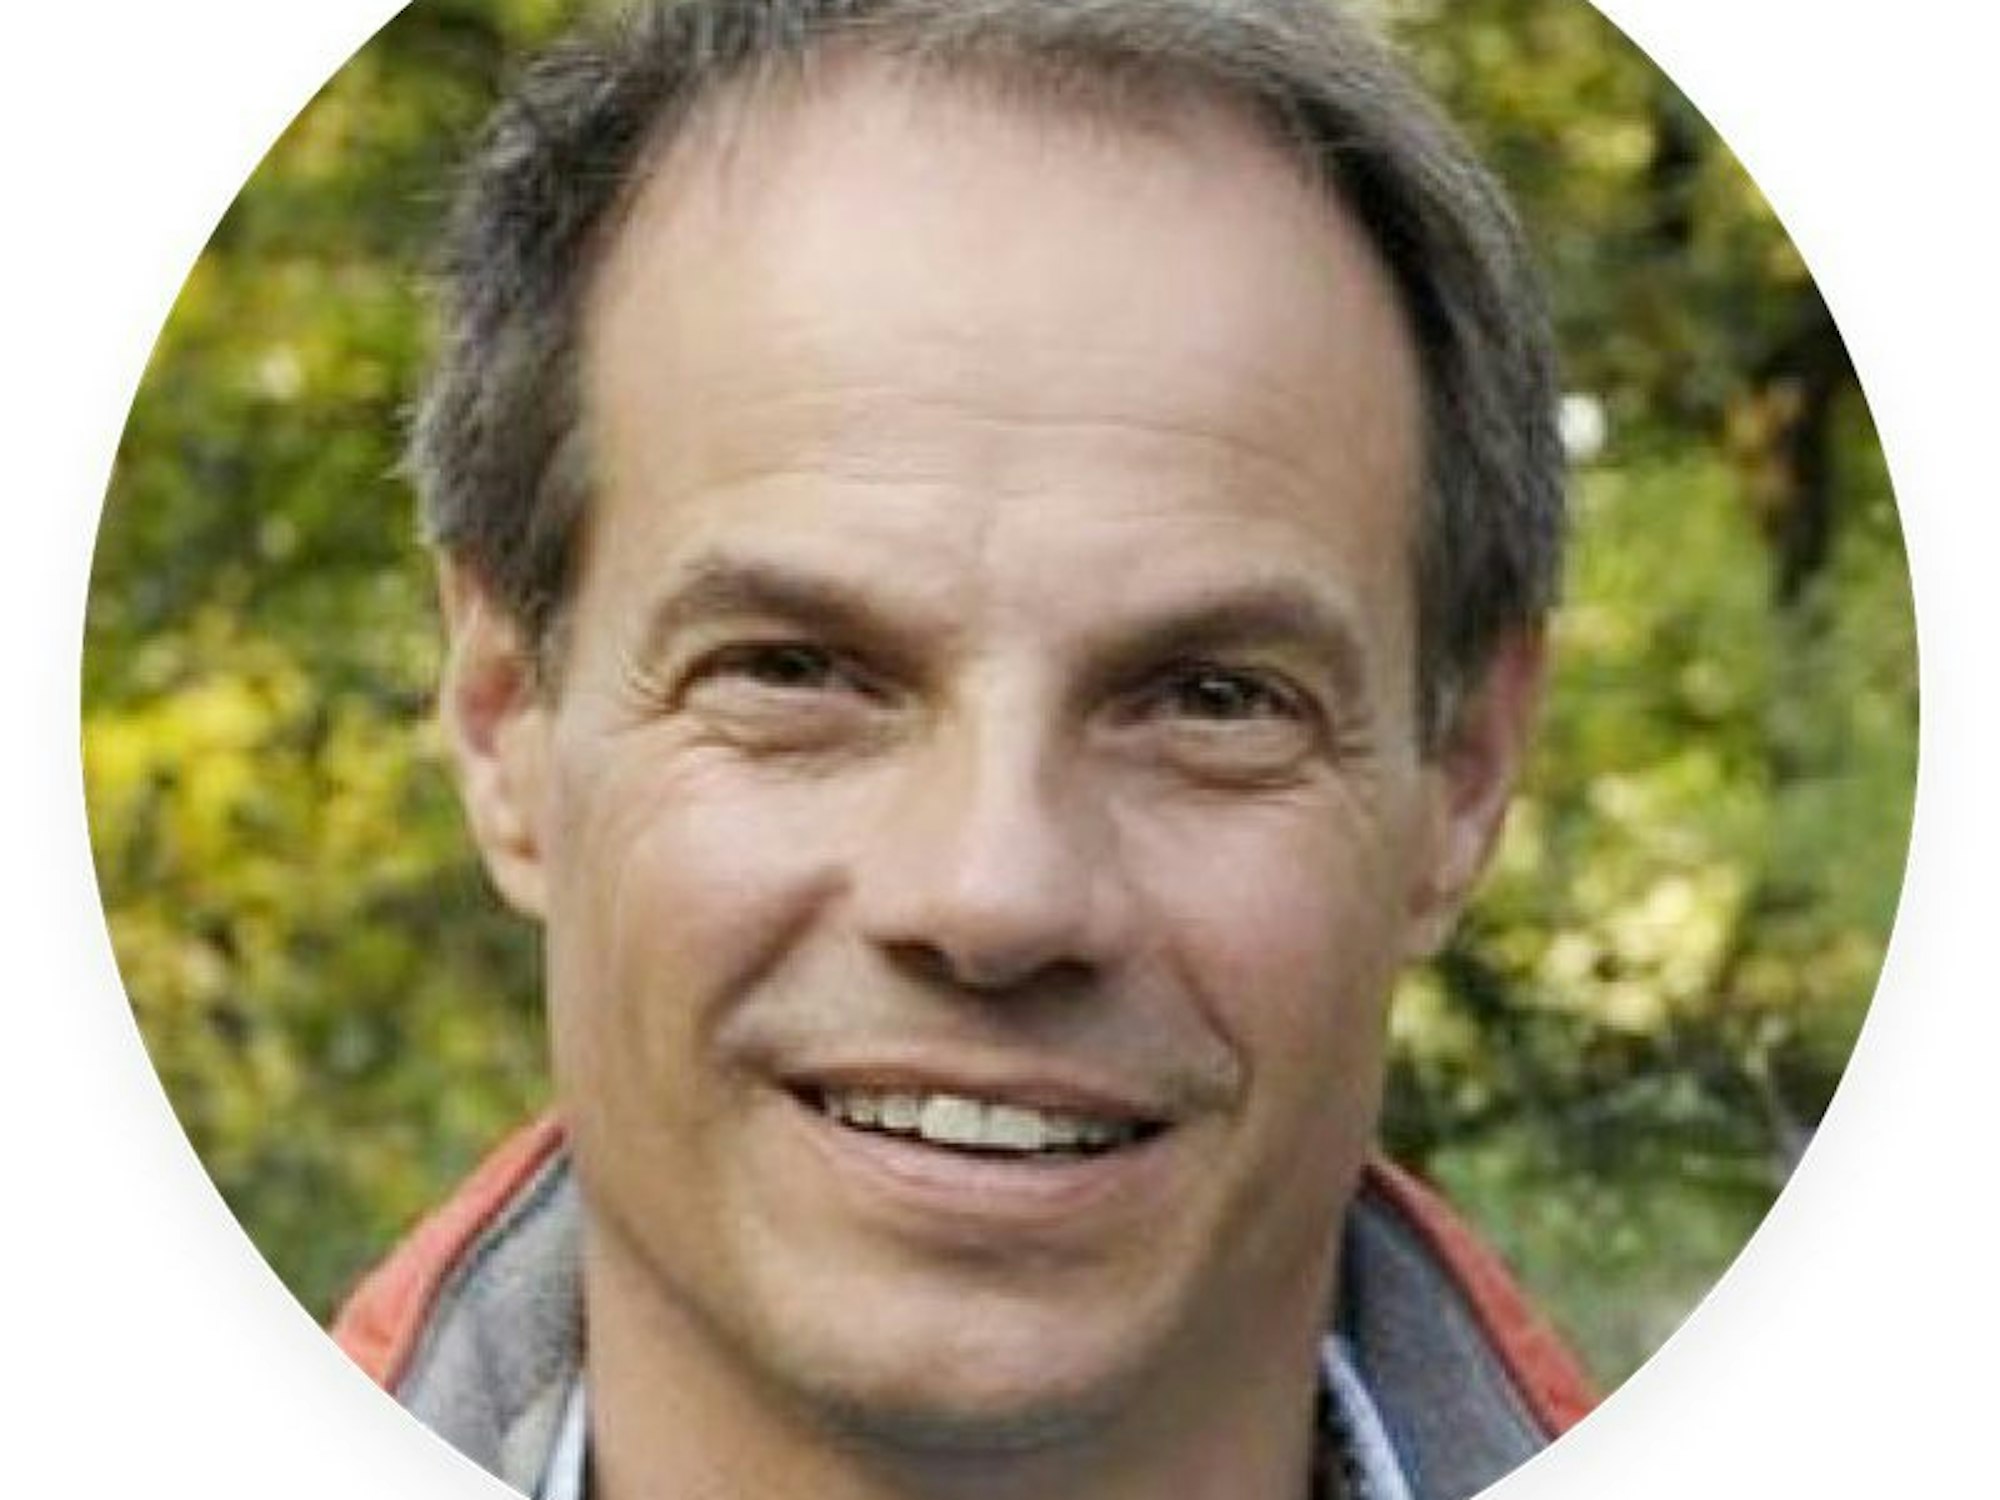 Dr. Markus Phlippen, Biologe, Gartenexperte und wiss. Leiter bei gardify.de